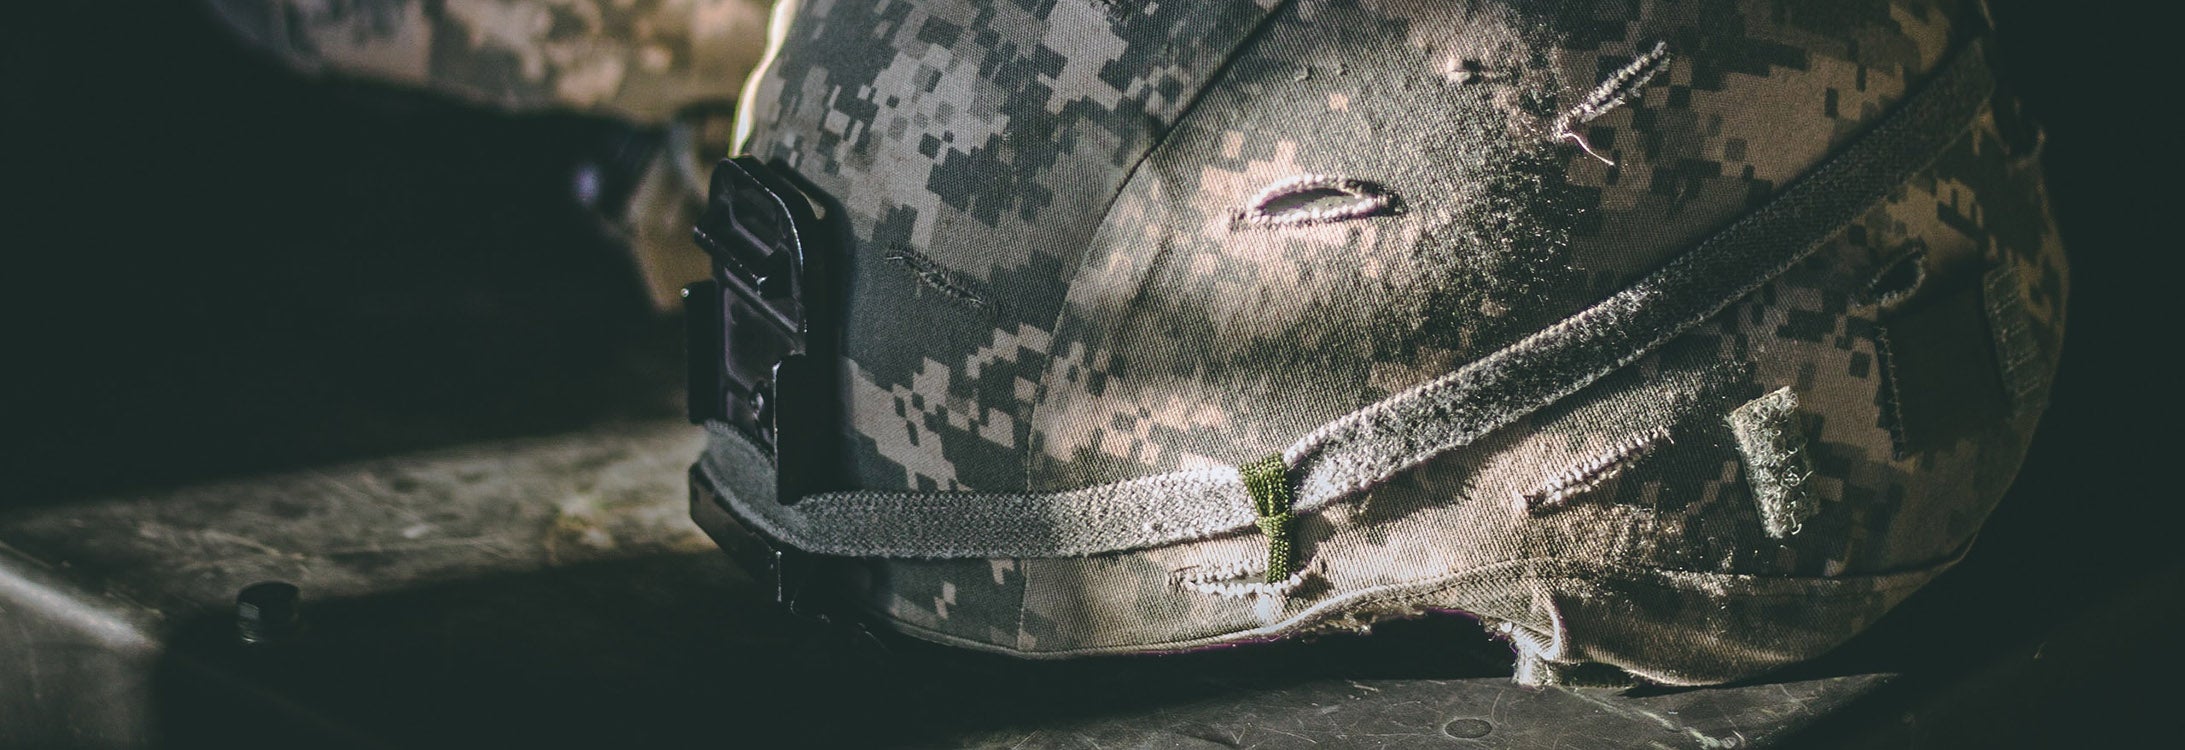 Desert military helmet